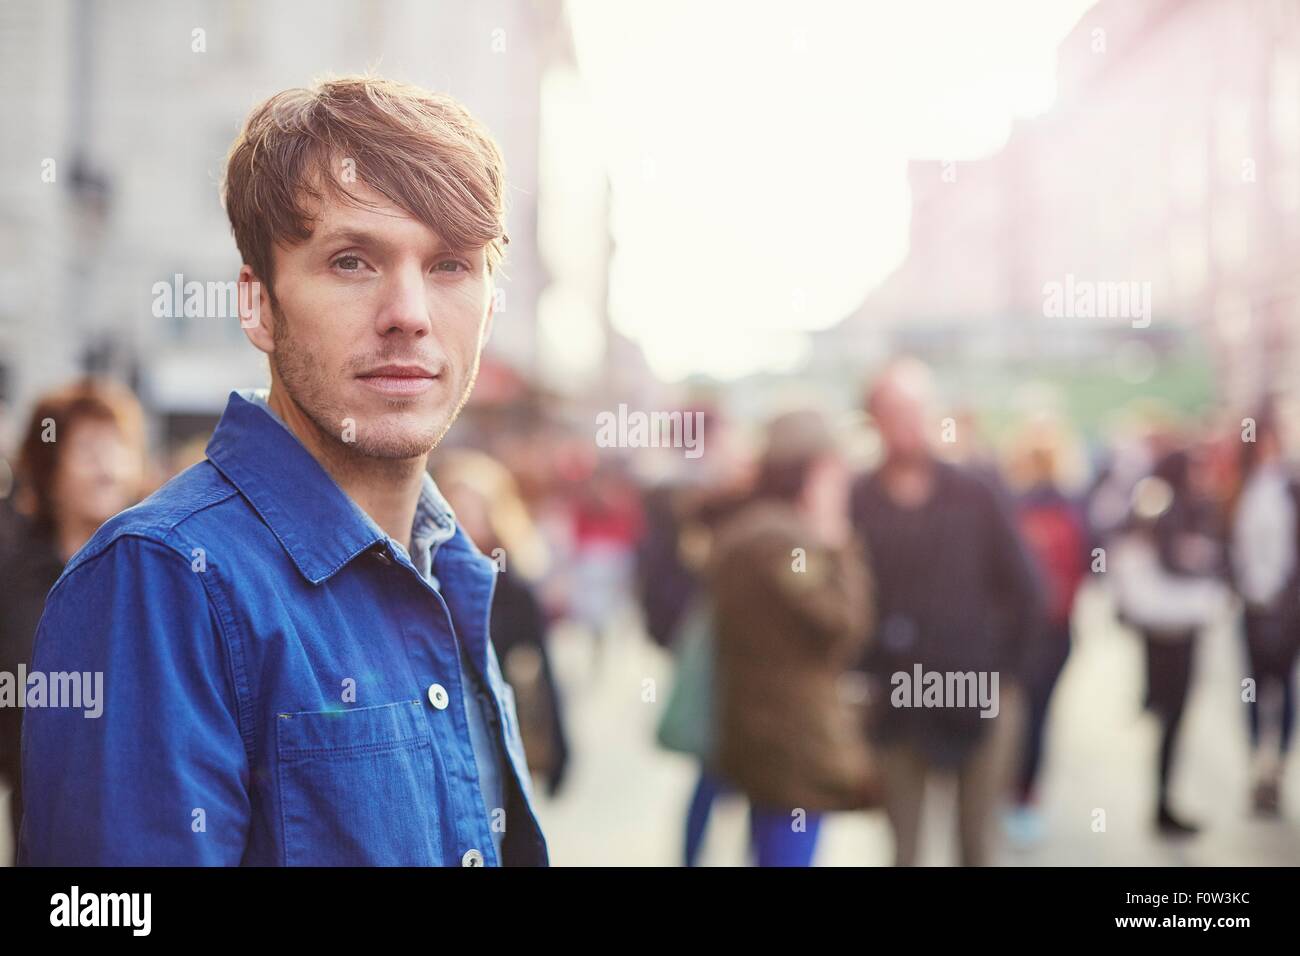 Portrait of mid adult man sur la rue bondée, London, UK Banque D'Images